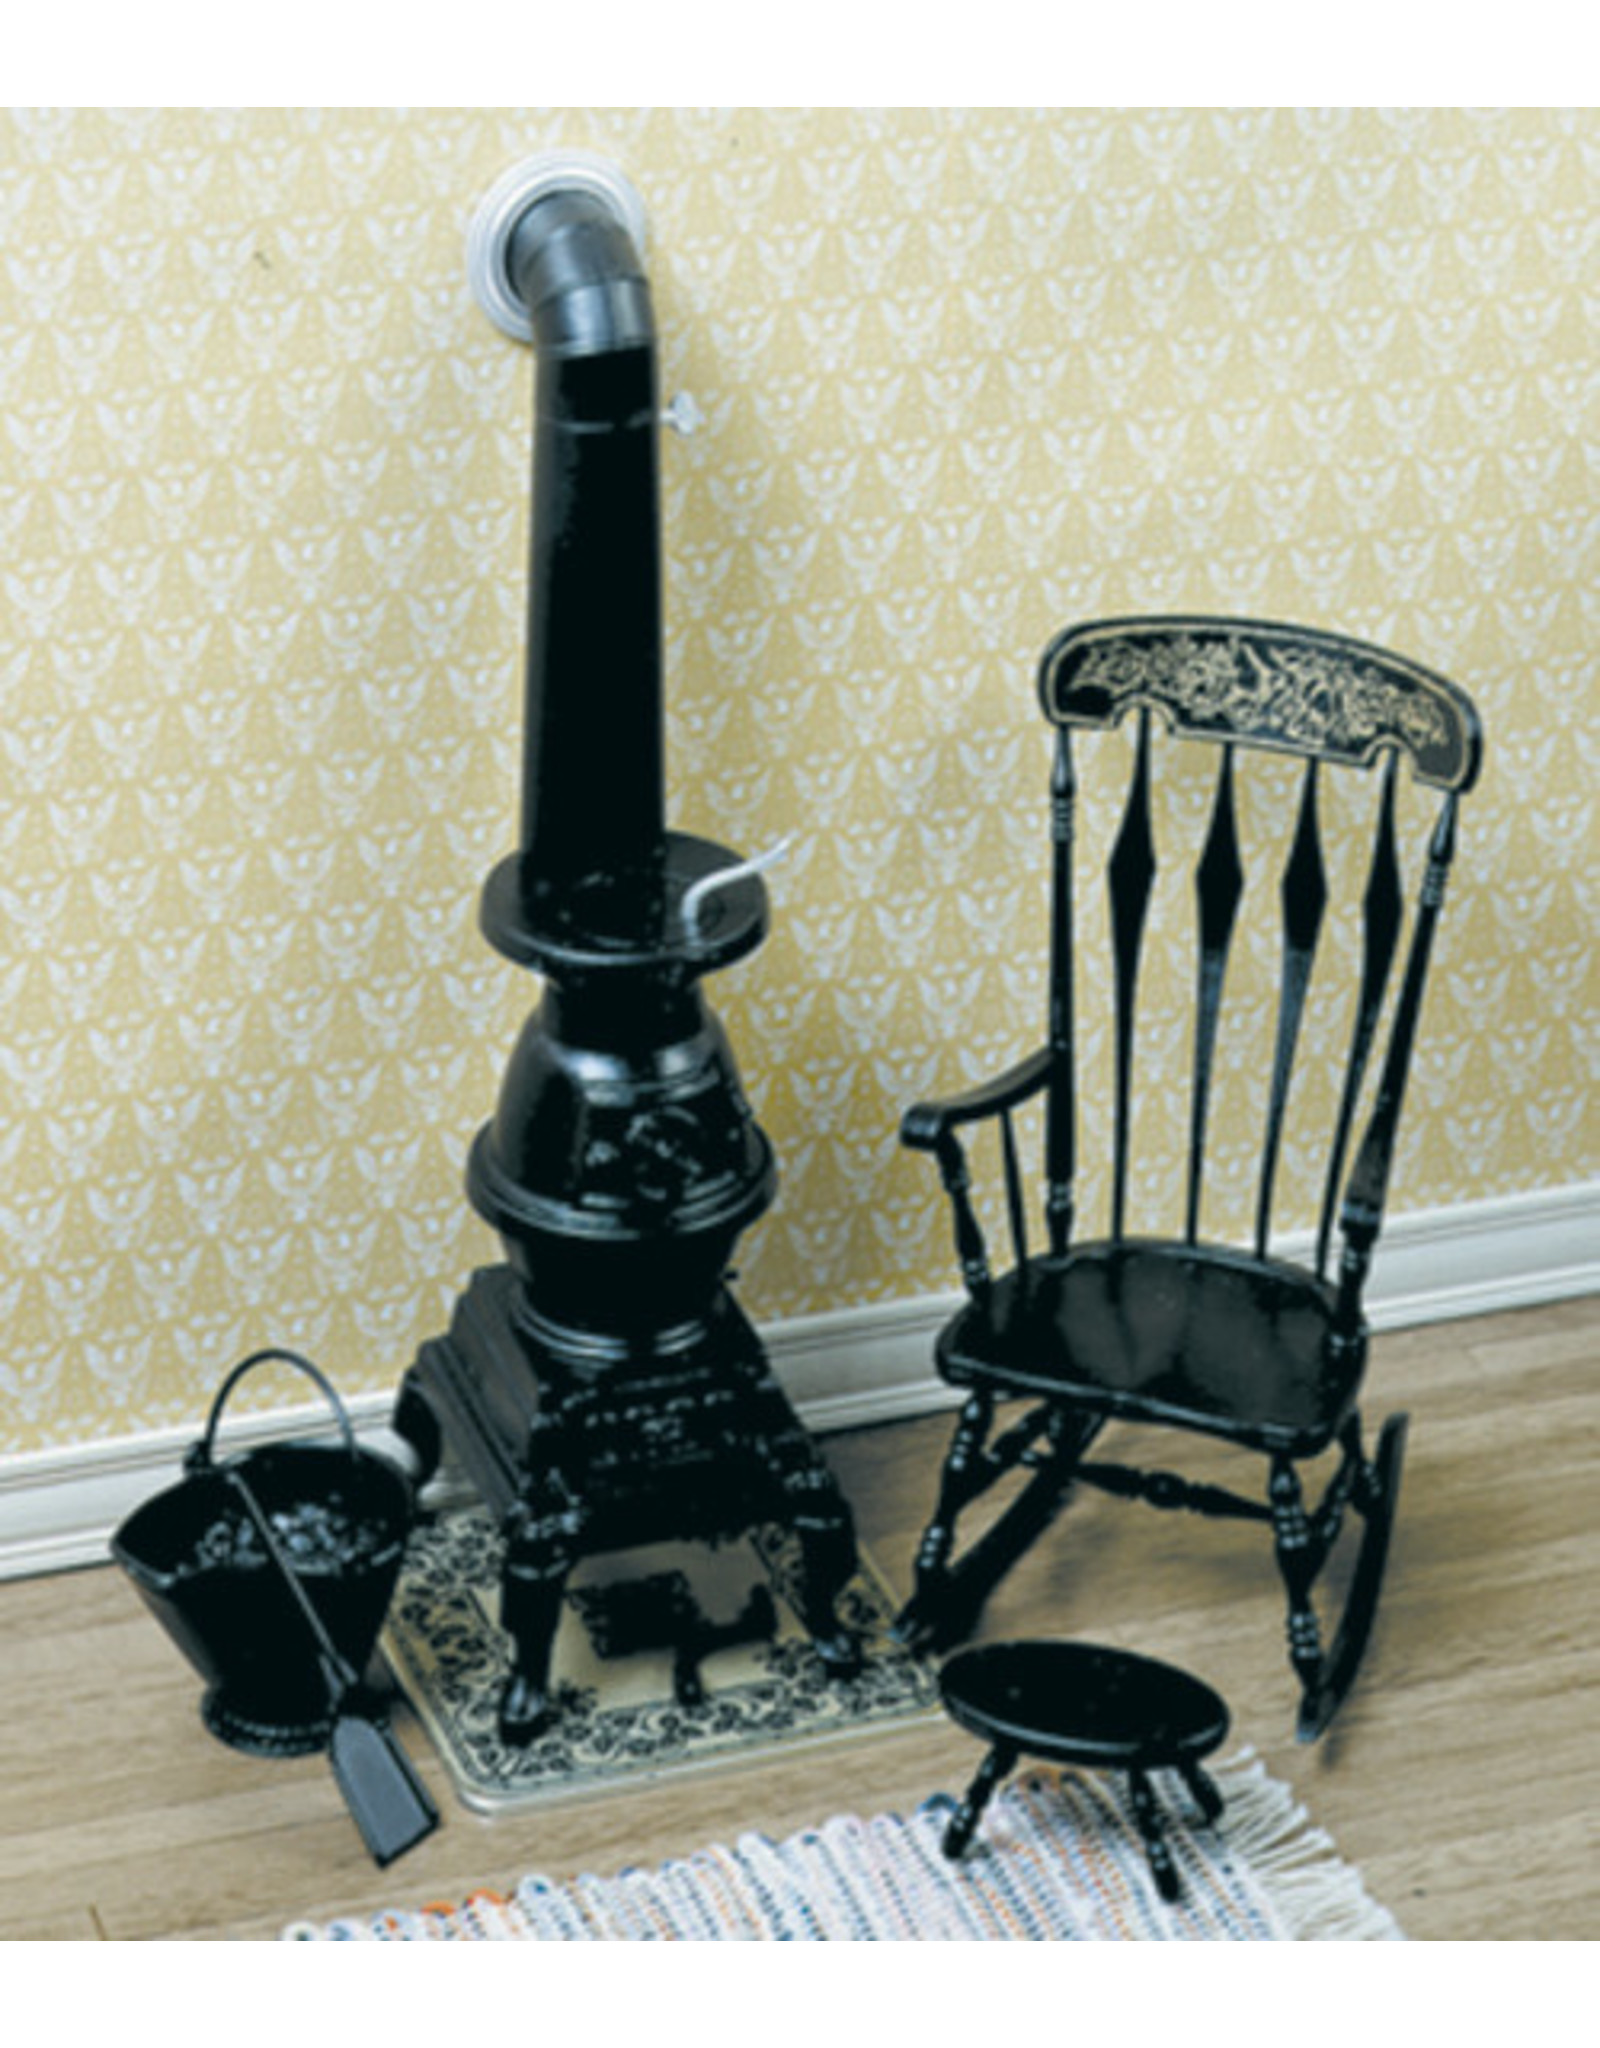 Chrysnbon Poêle de chauffage noir avec rocking chair (kit) miniature 1:12